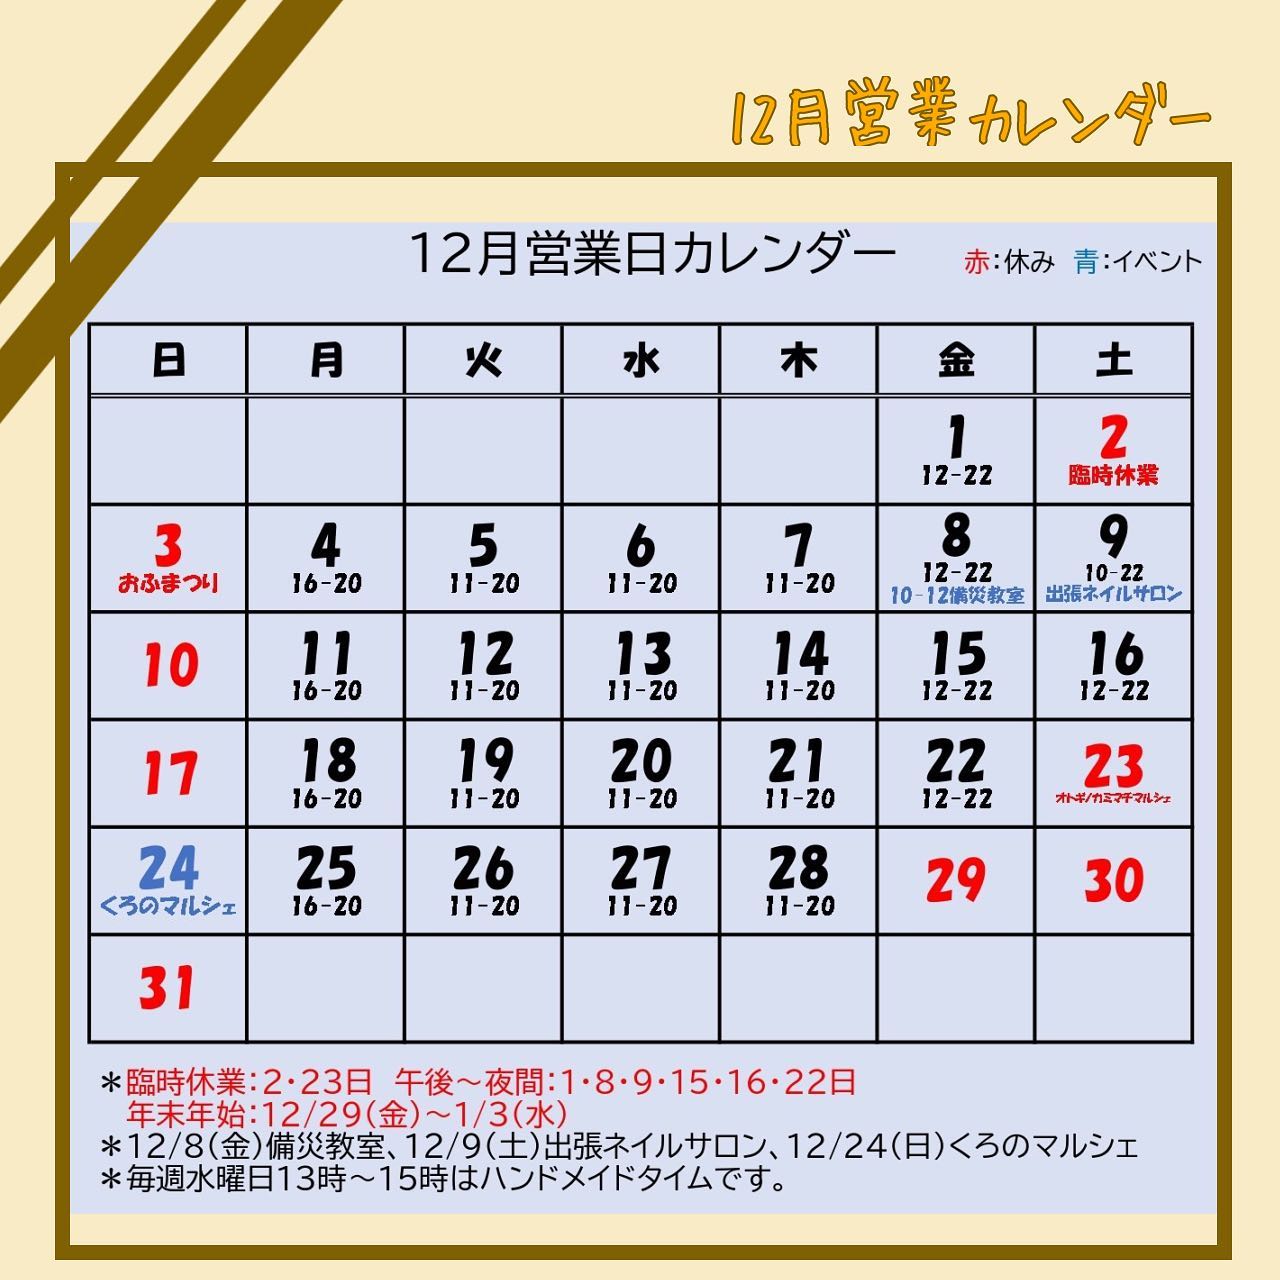 【12月営業カレンダー】